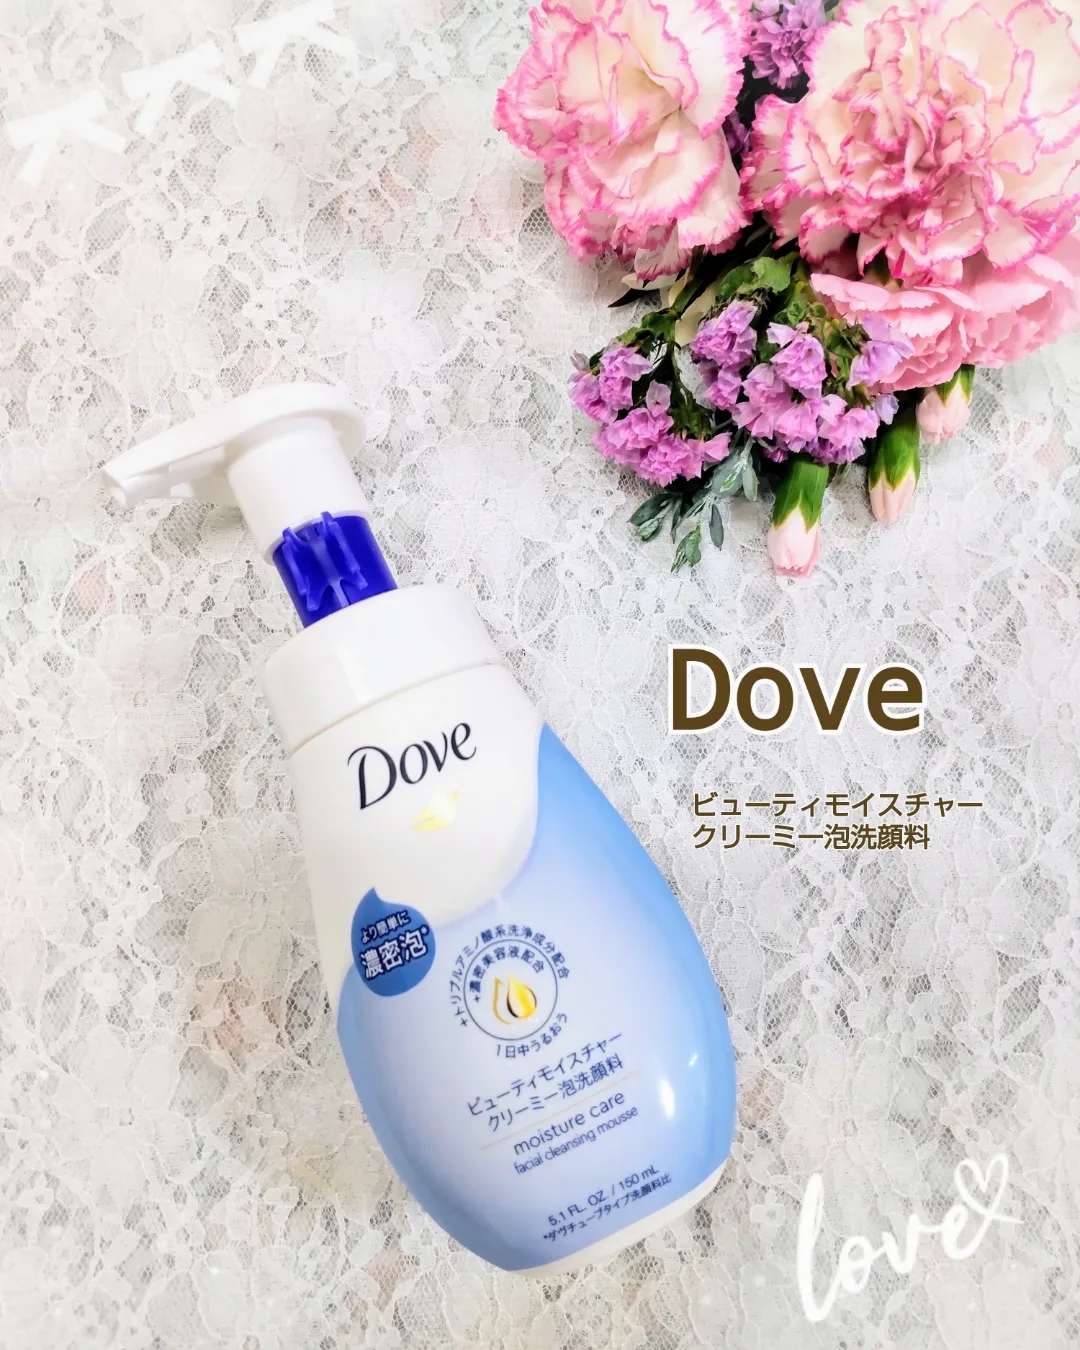 Dove(ダヴ) ビューティモイスチャー クリーミー泡洗顔料の良い点・メリットに関するティンカーベル0908さんの口コミ画像1